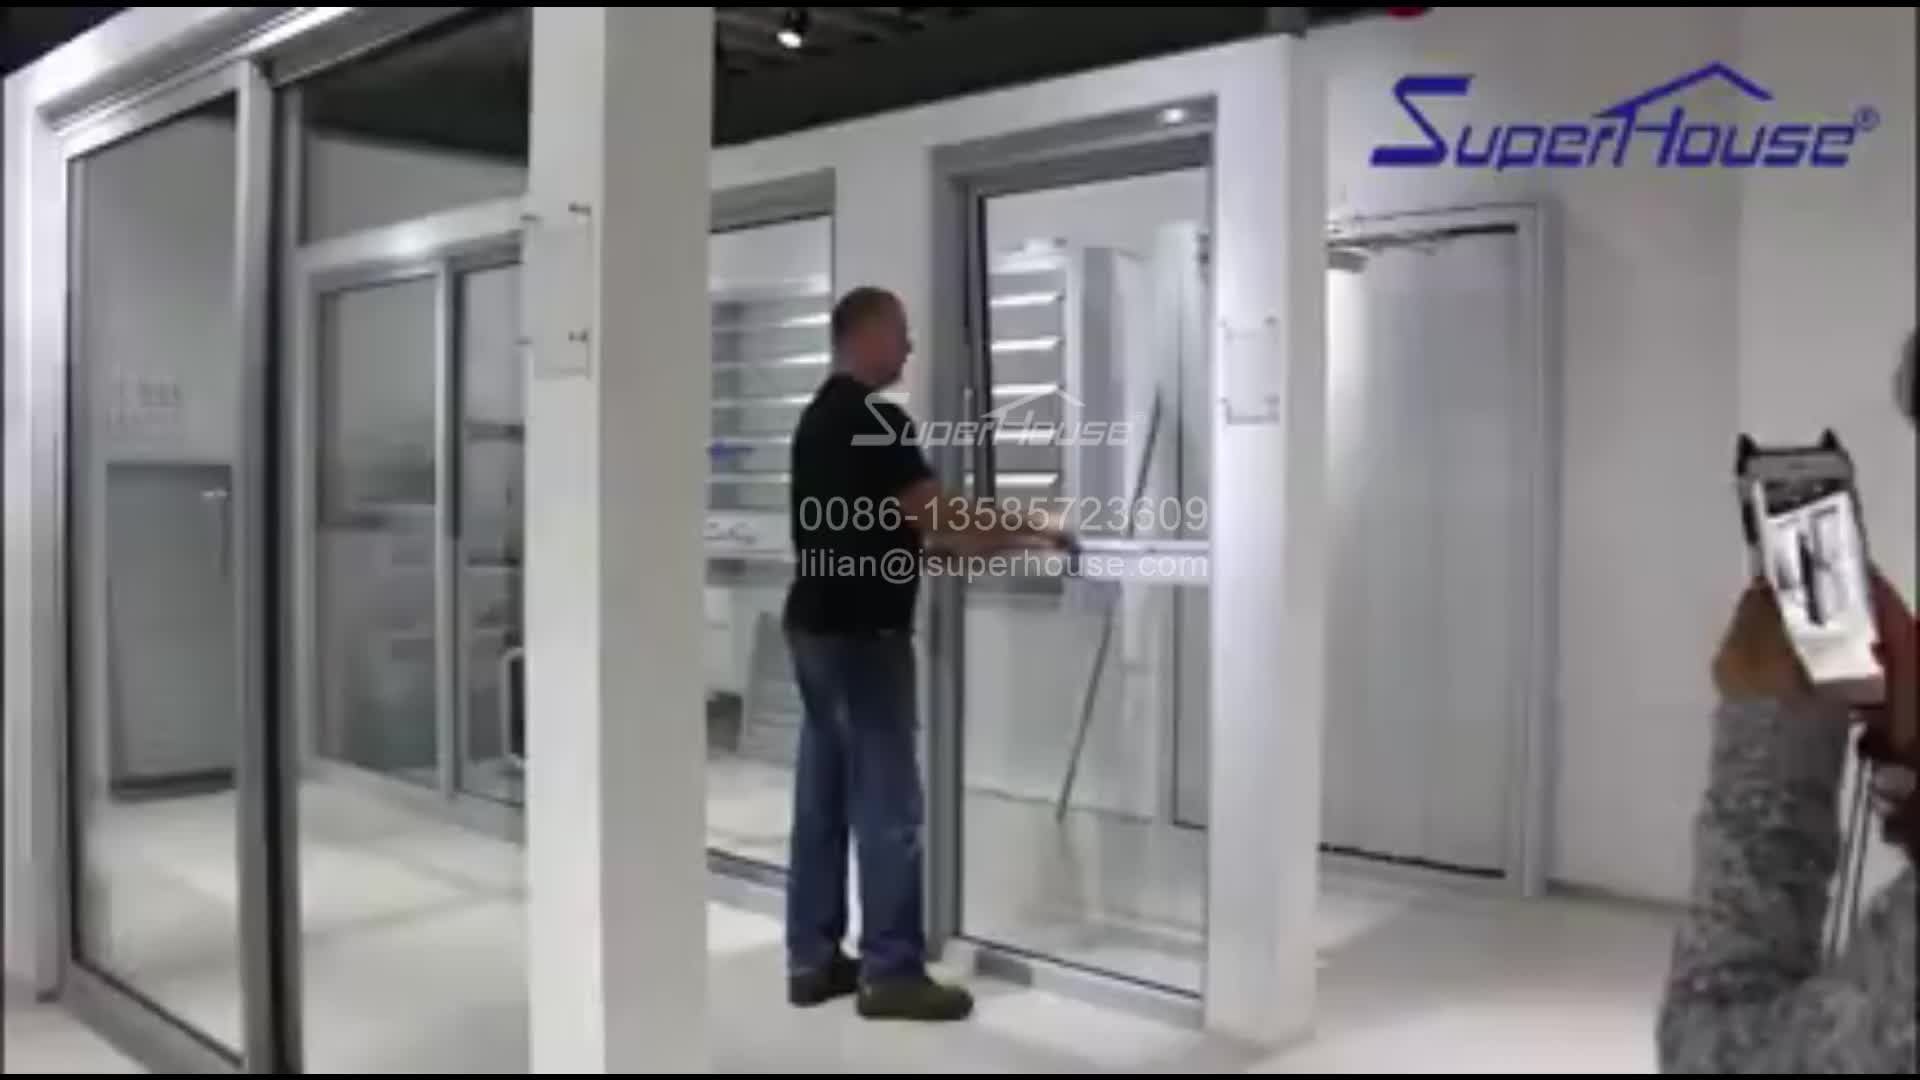 Superhouse hurricane proof aluminum frame bifold door